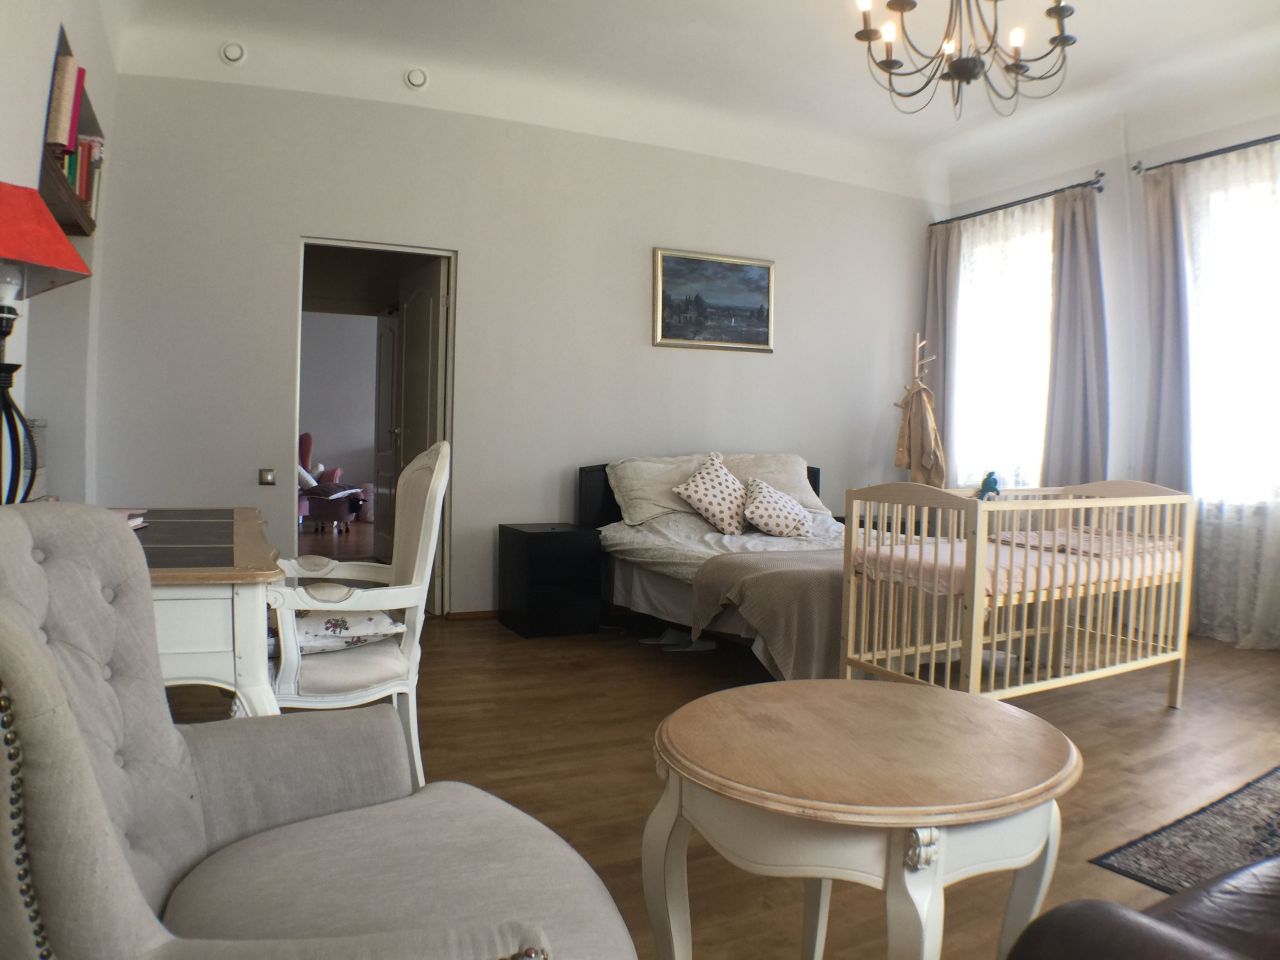 Apartment in Riga, Latvia, 130 sq.m - picture 1